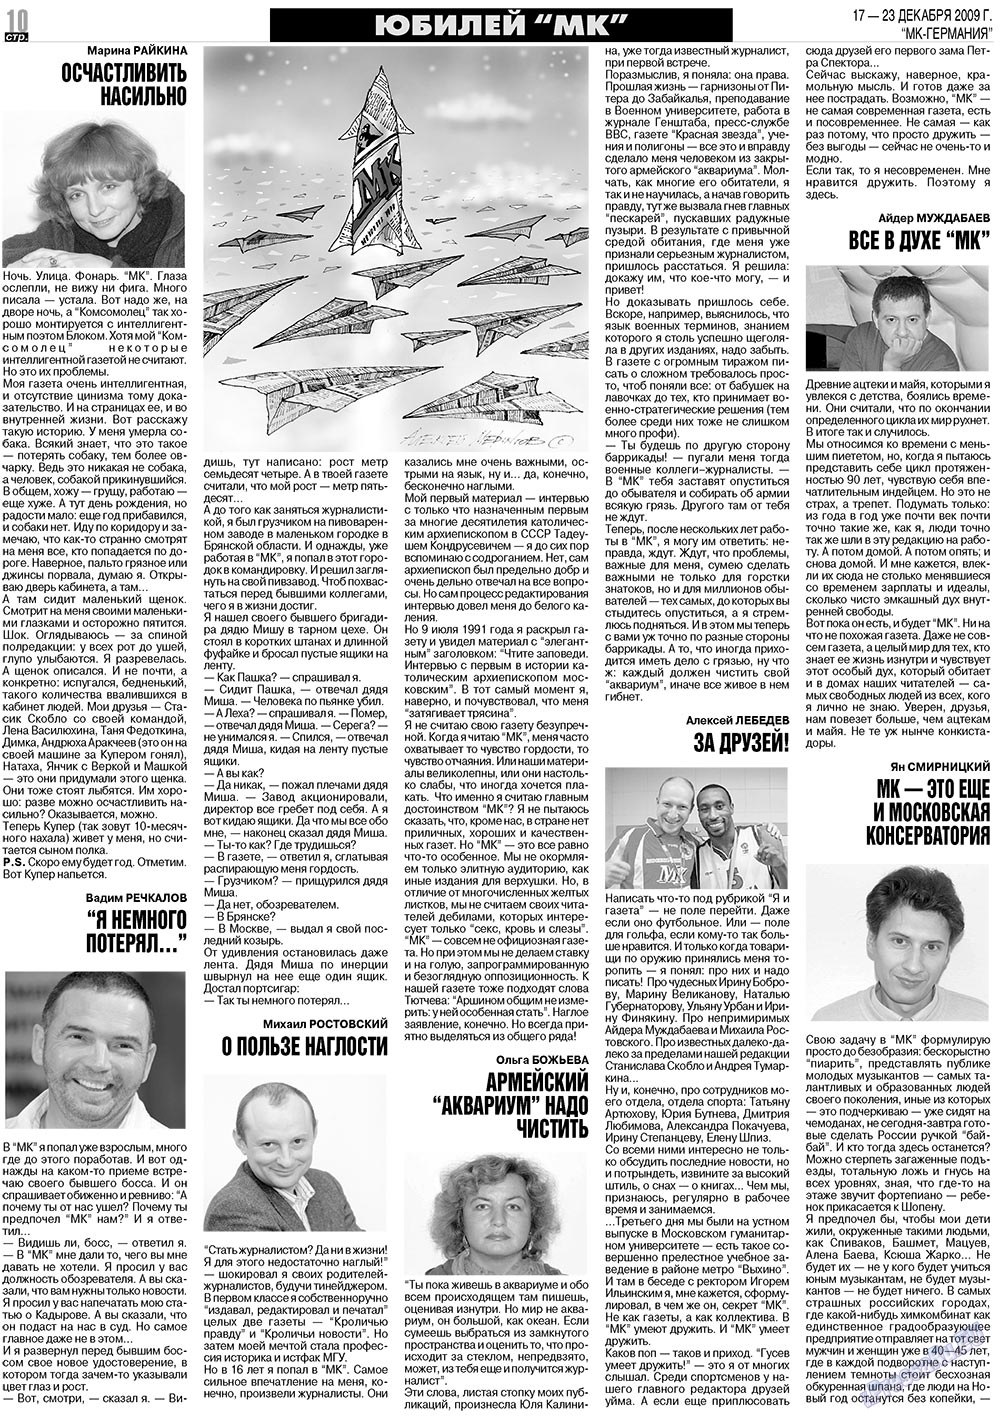 МК-Германия (газета). 2009 год, номер 51, стр. 10